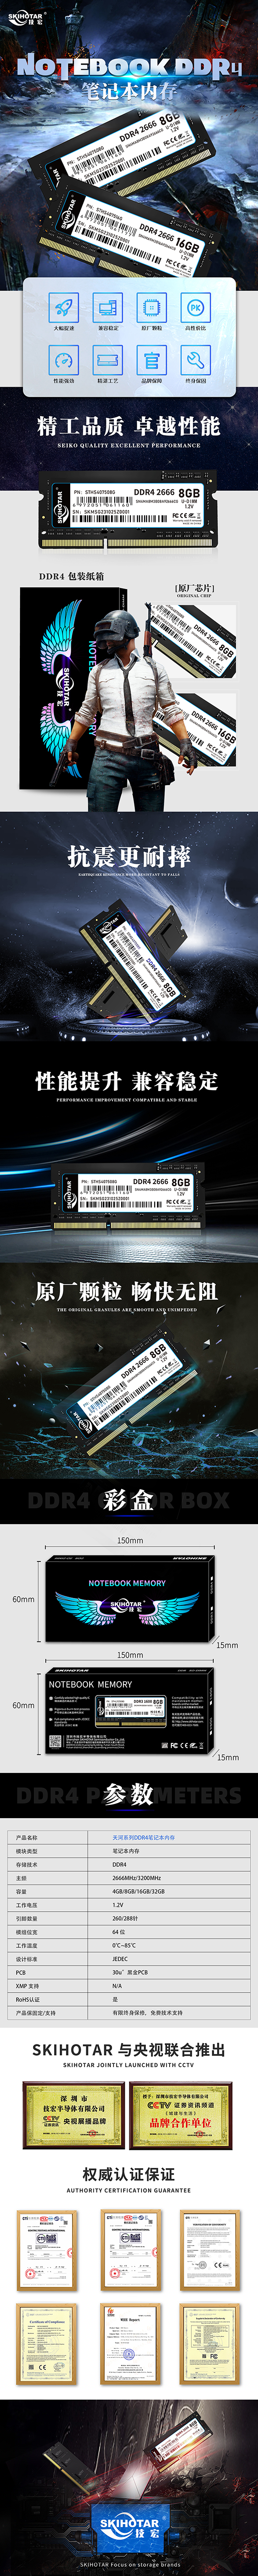 DDR4笔记本详情--中文.jpg